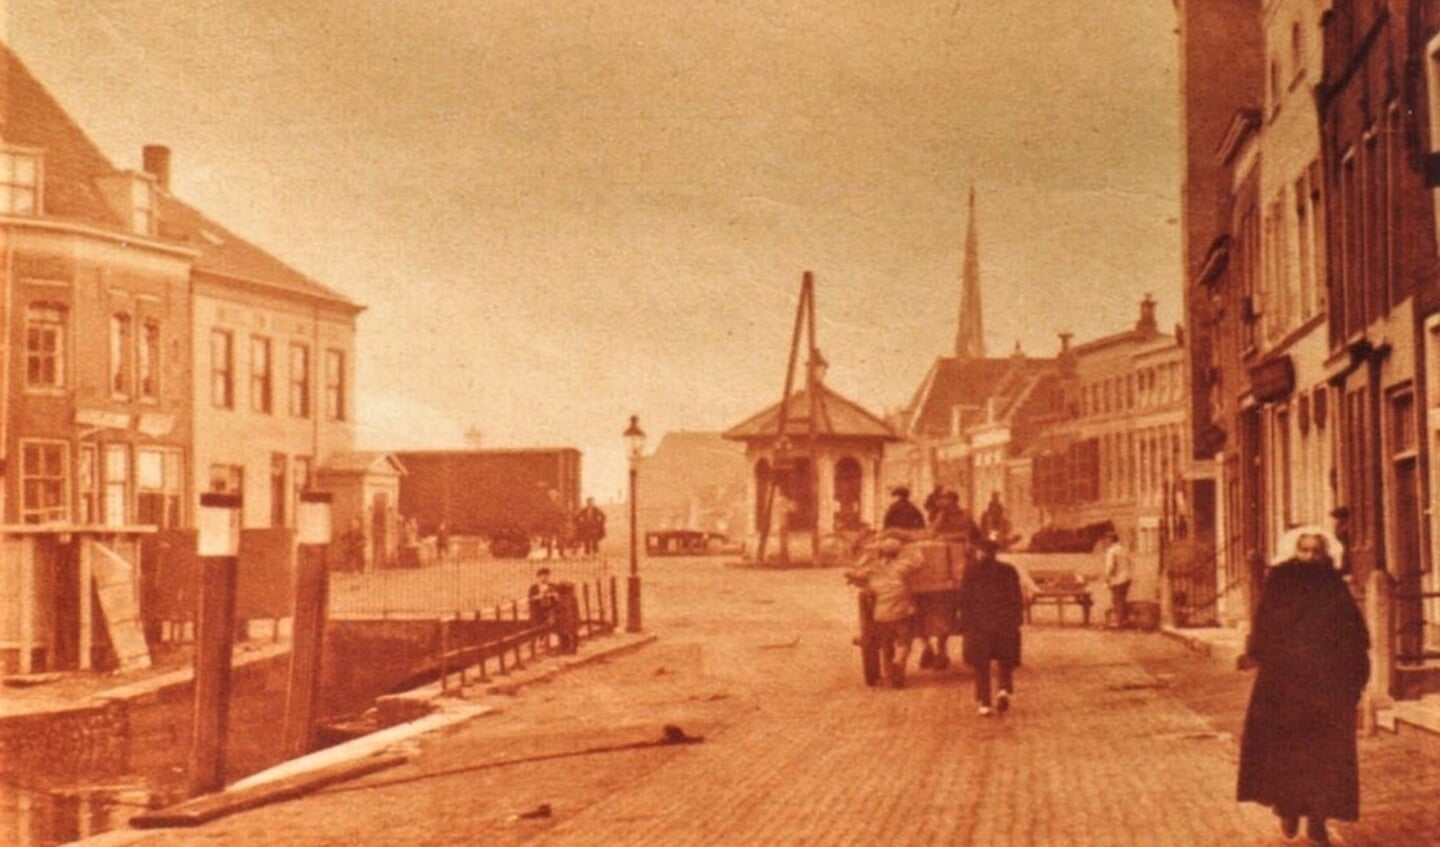 Oude foto van de Havendam/Bierkade in Oud-Beijerland. Het is onbekend waar de 'vischbank' ooit gestaan heeft. (foto: archief Hist. Ver. Oud-Beijerland)